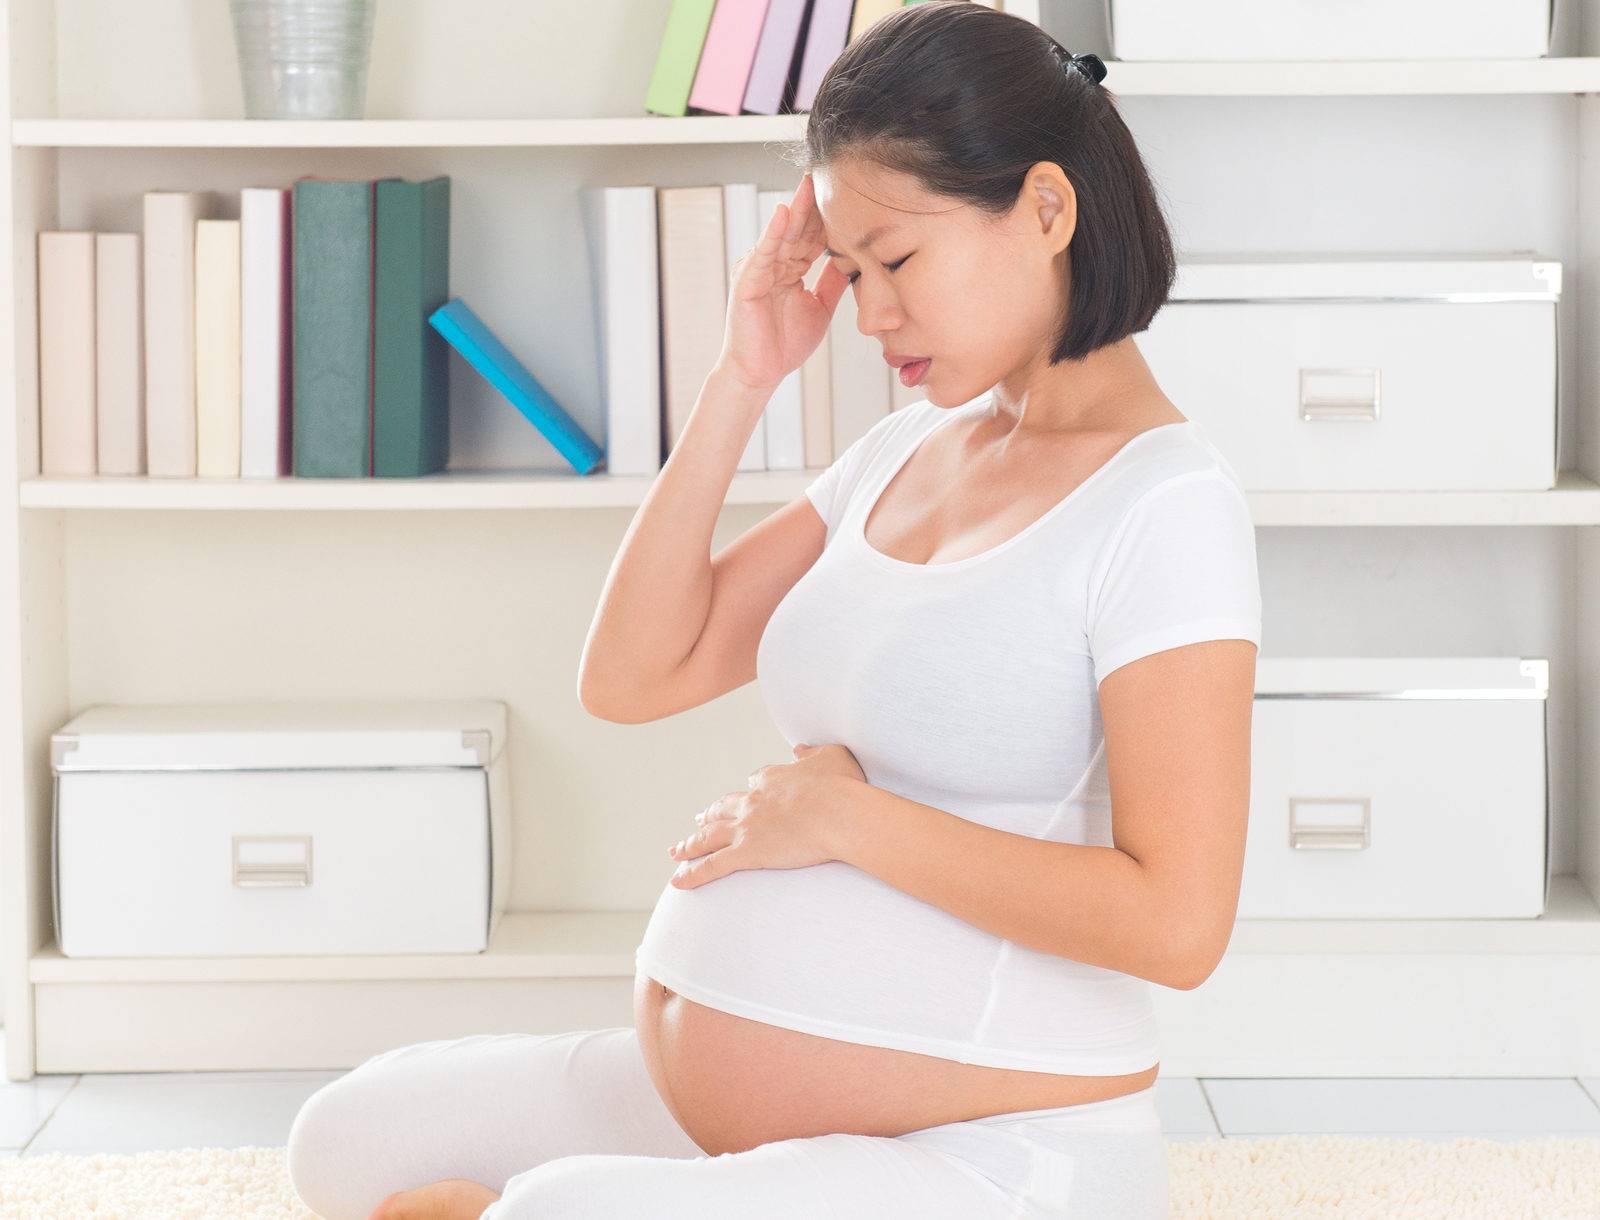 Нормальна ли излишняя потливость во время беременности?